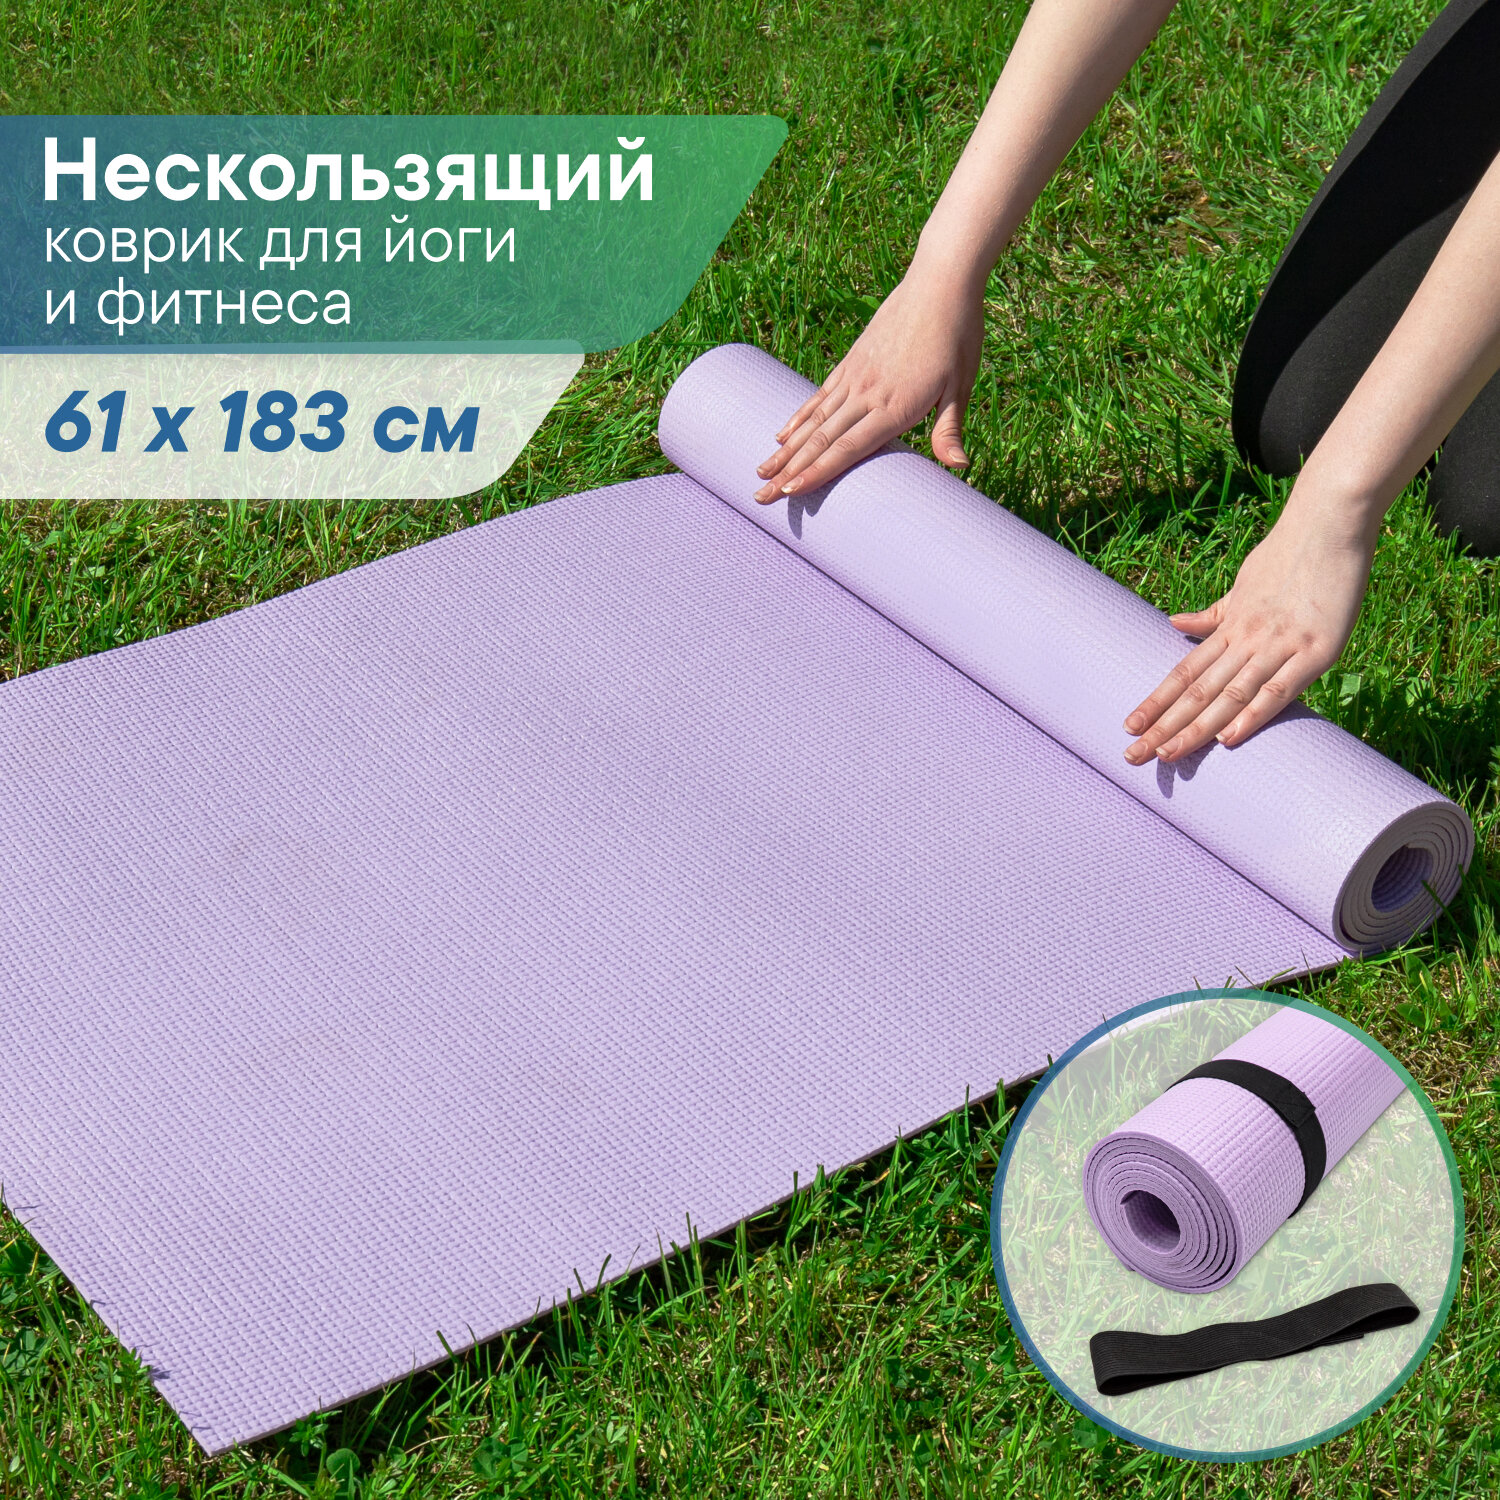 Коврик для спорта VILINA спортивный коврик для йоги и фитнеса, растяжки, гимнастики 0,5 см 61х183 см лавандовый фиолетовый